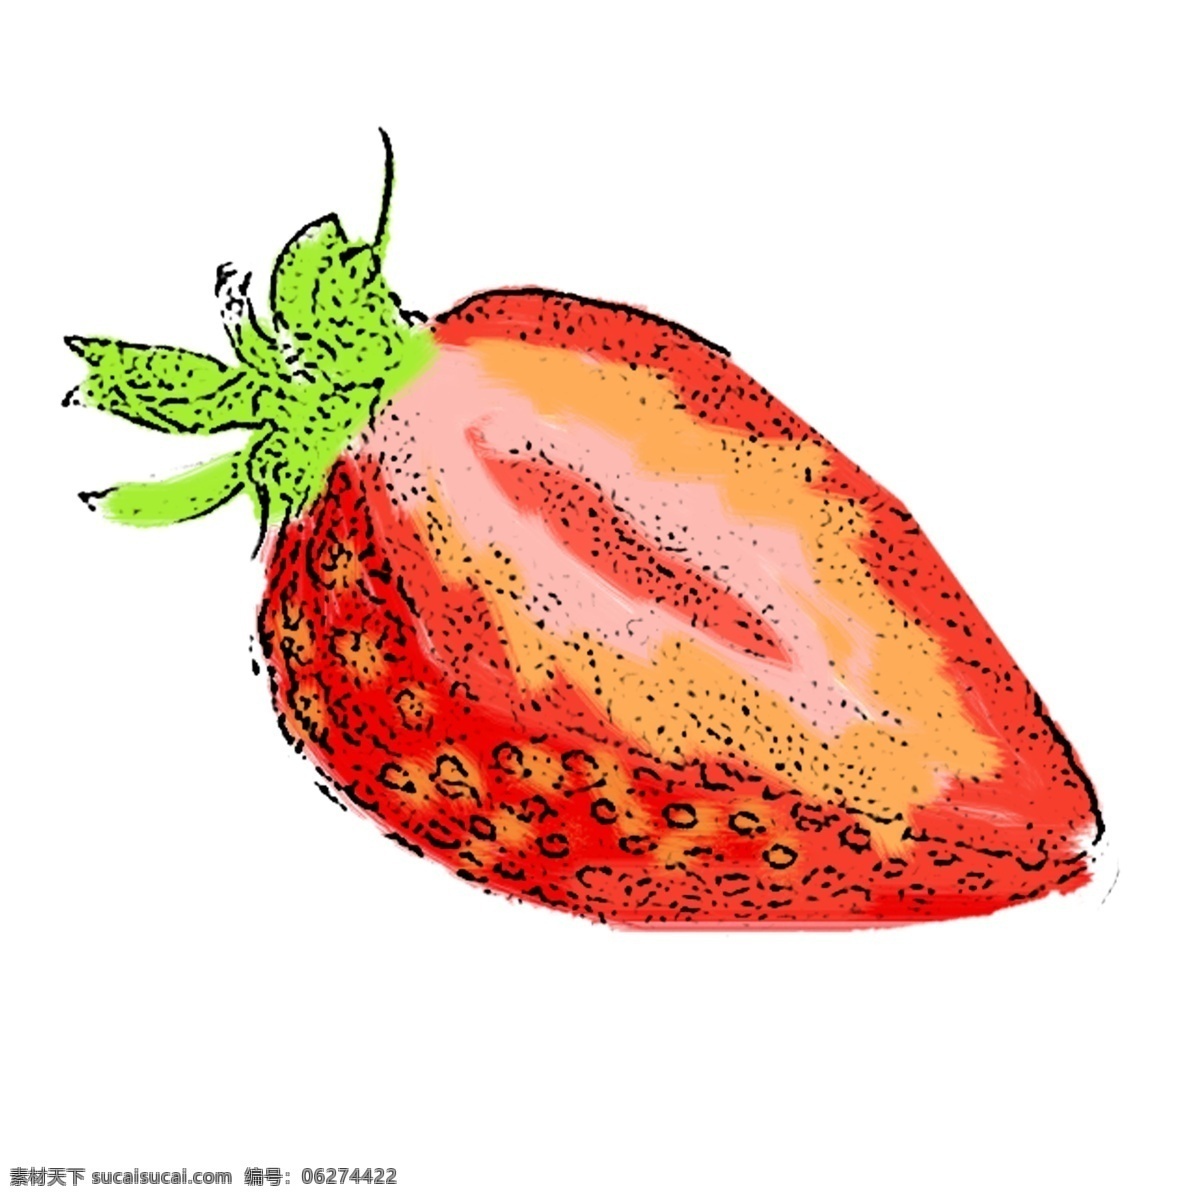 朵 切开 草莓 免 抠 图 水墨 卡通 手绘 切开的草莓